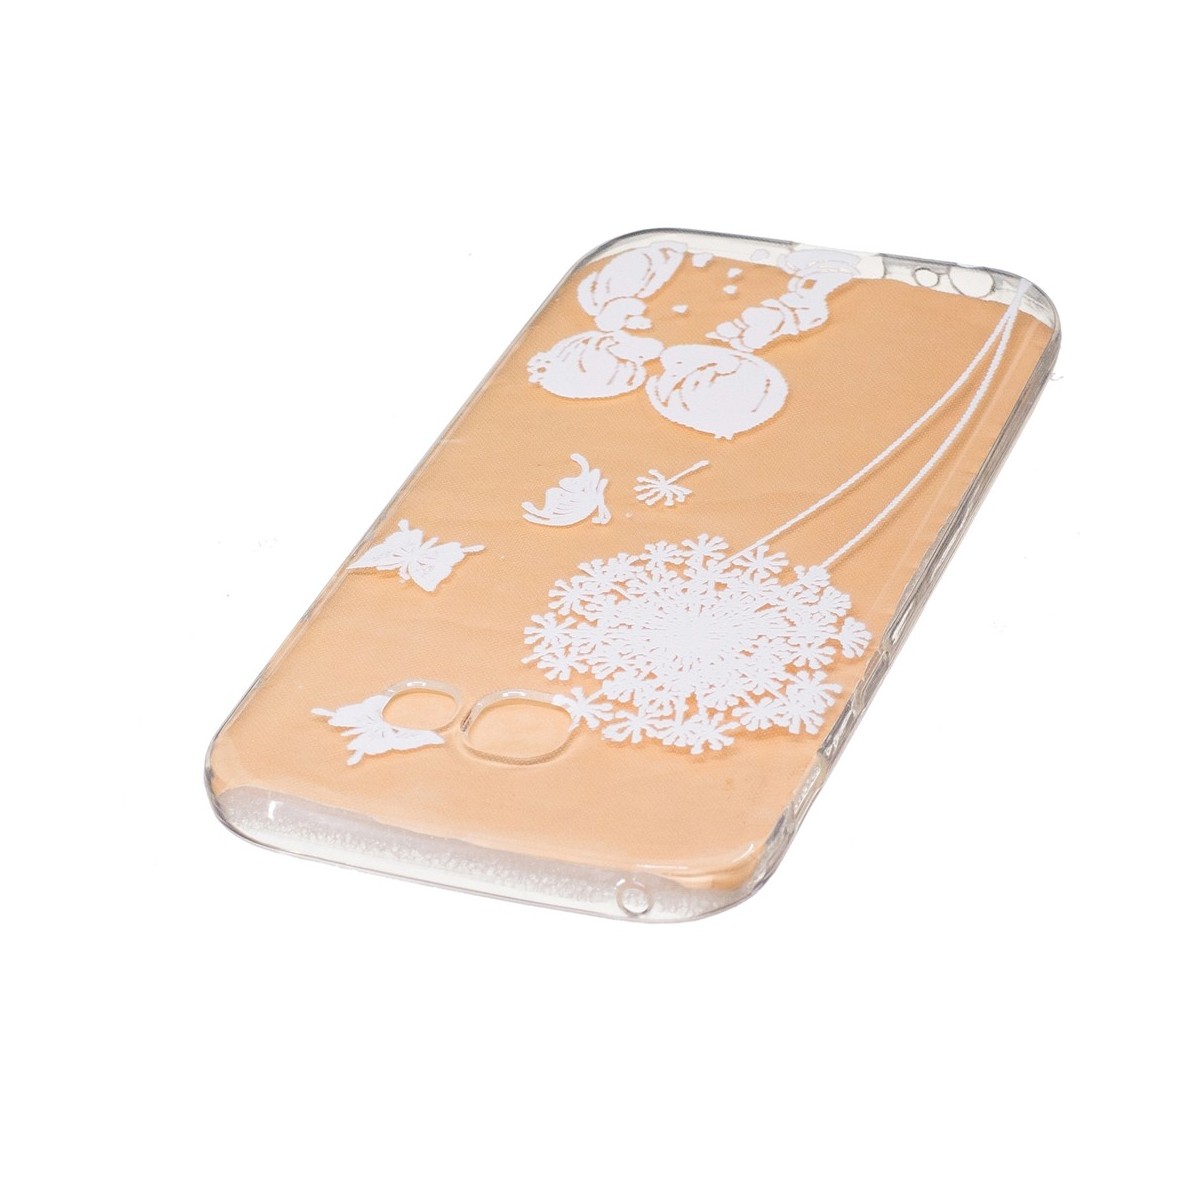 Coque Galaxy A5 (2017) Transparente souple motif Fleurs et Papillons Blancs - Crazy Kase